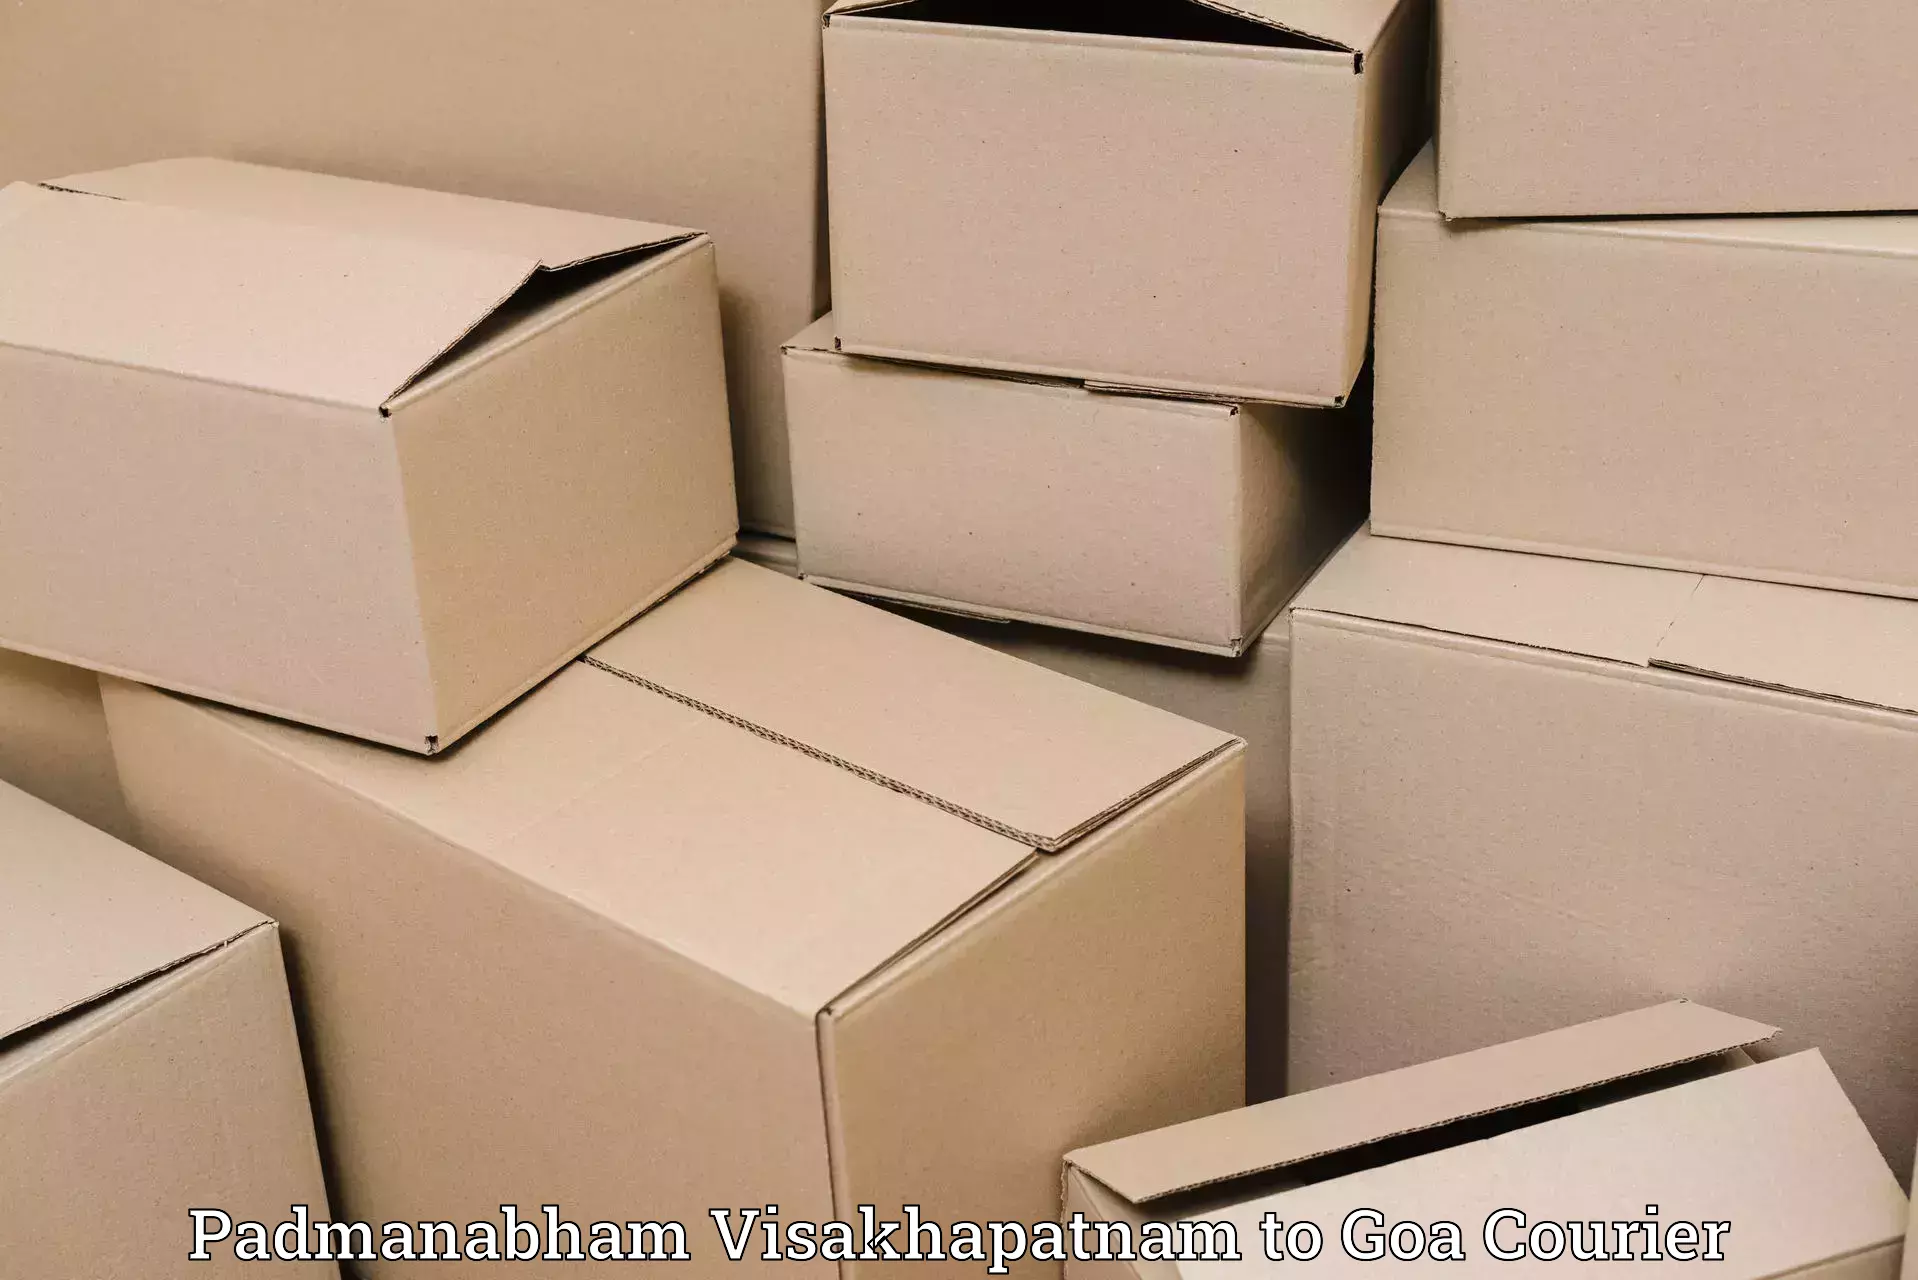 Global freight services Padmanabham Visakhapatnam to Vasco da Gama